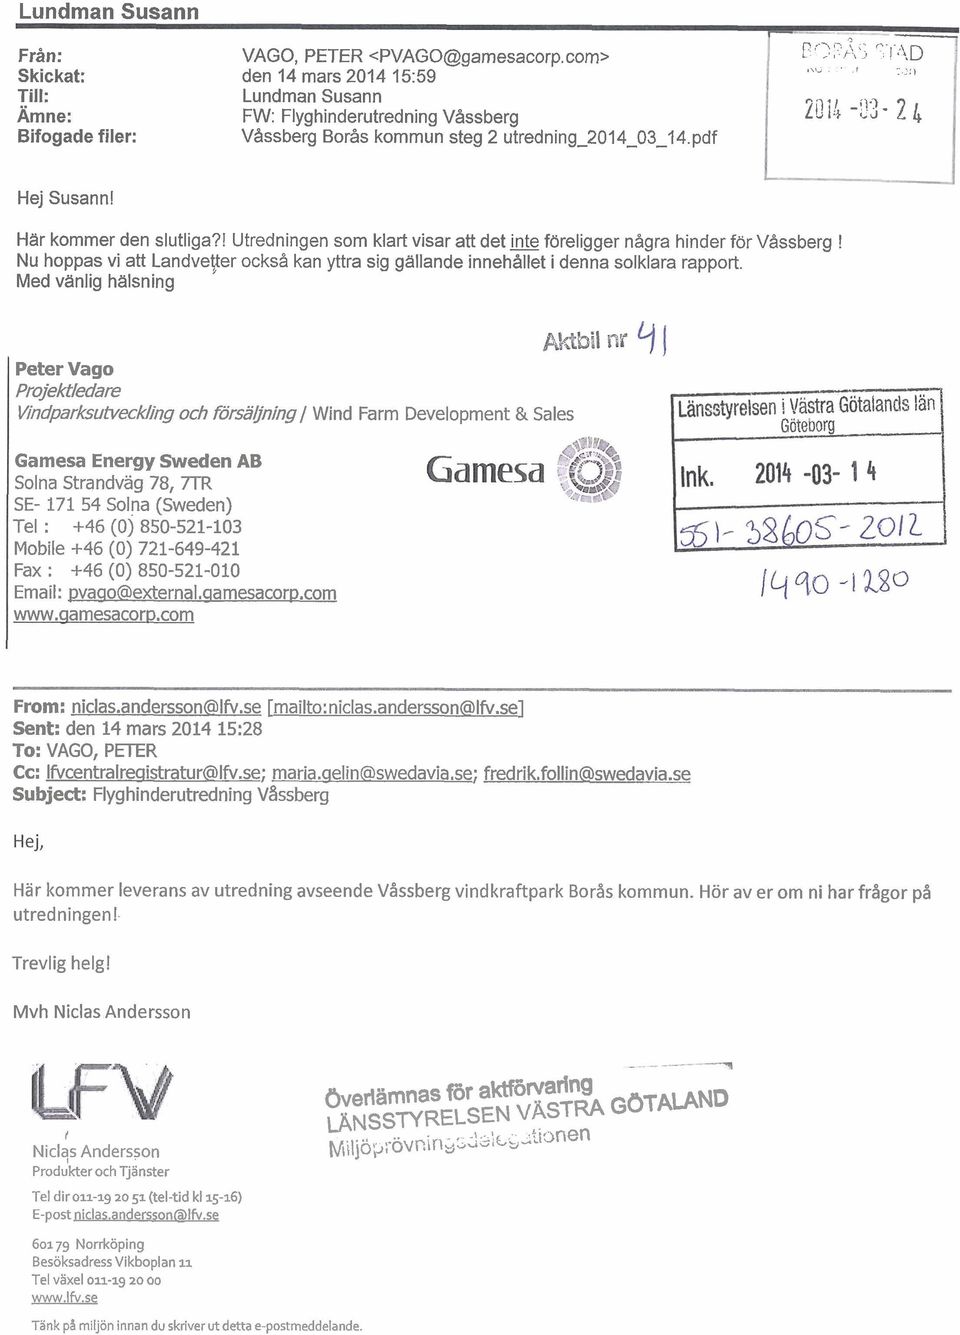 Här kommer den slutliga?! Utredningen som klart visar att det föreligger några hinder för Våssberg! Nu hoppas vi att Landvever också kan yttra sig gällande innehållet i denna solklara rapport.